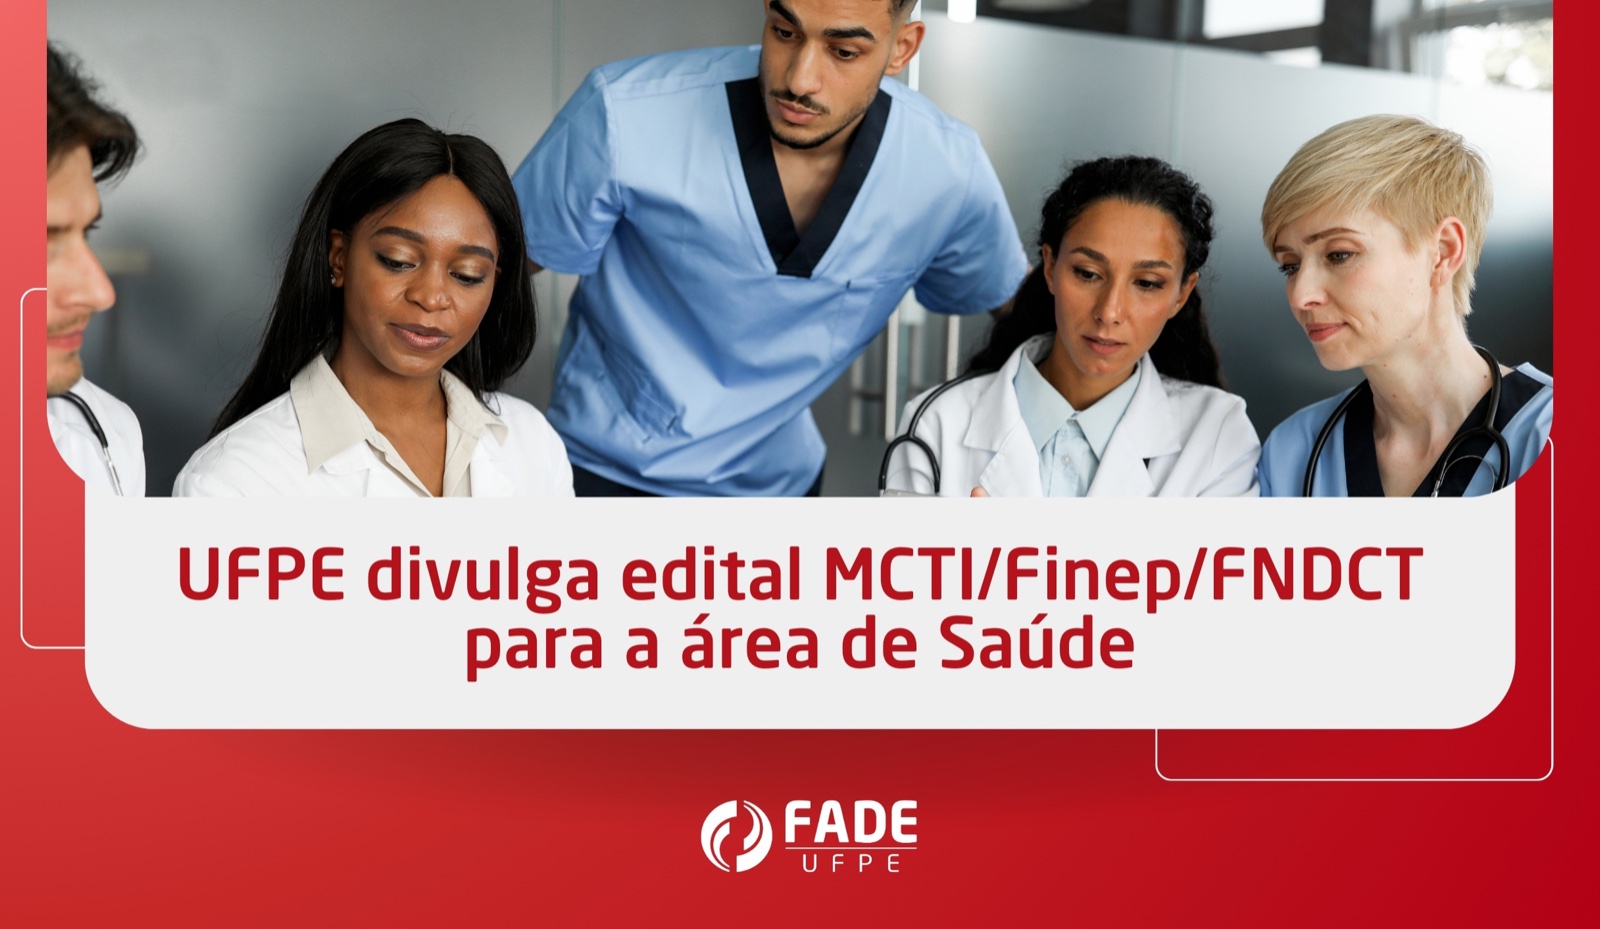 UFPE divulga edital MCTI/Finep/FNDCT para a área de Saúde